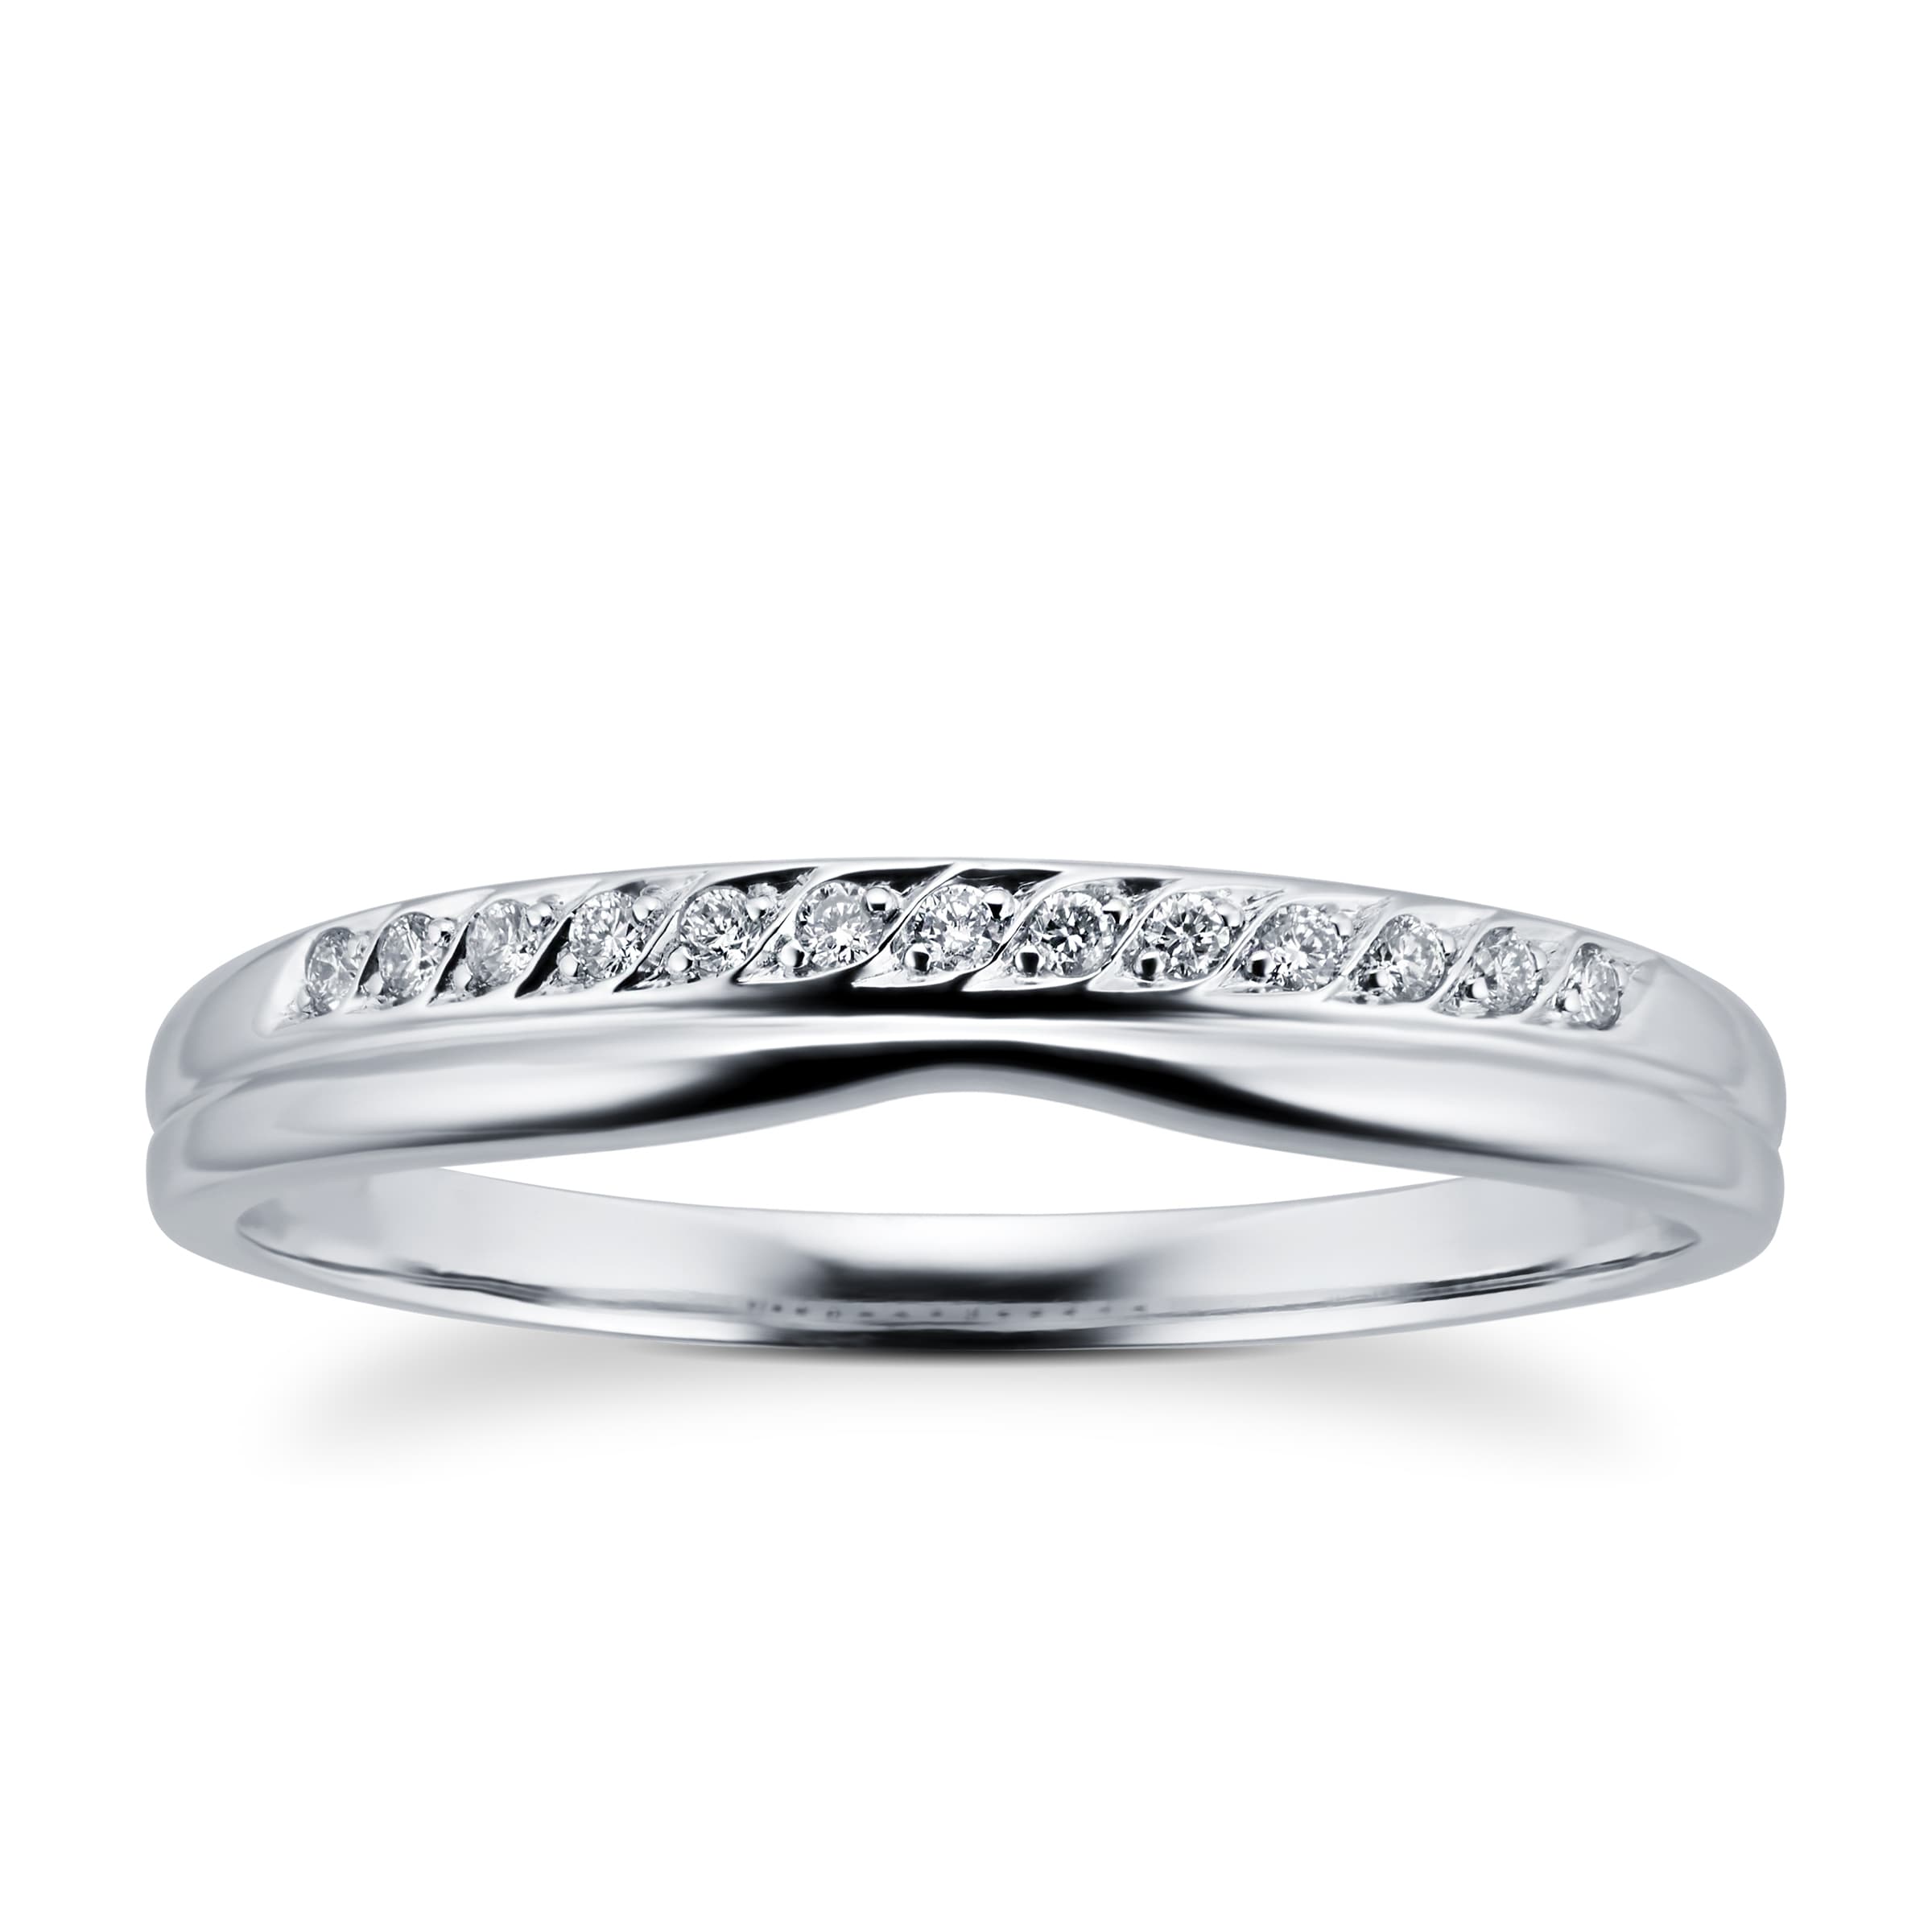 Ladies Diamond Set Shaped Wedding Ring In 18 Carat White Gold - Ring Size L